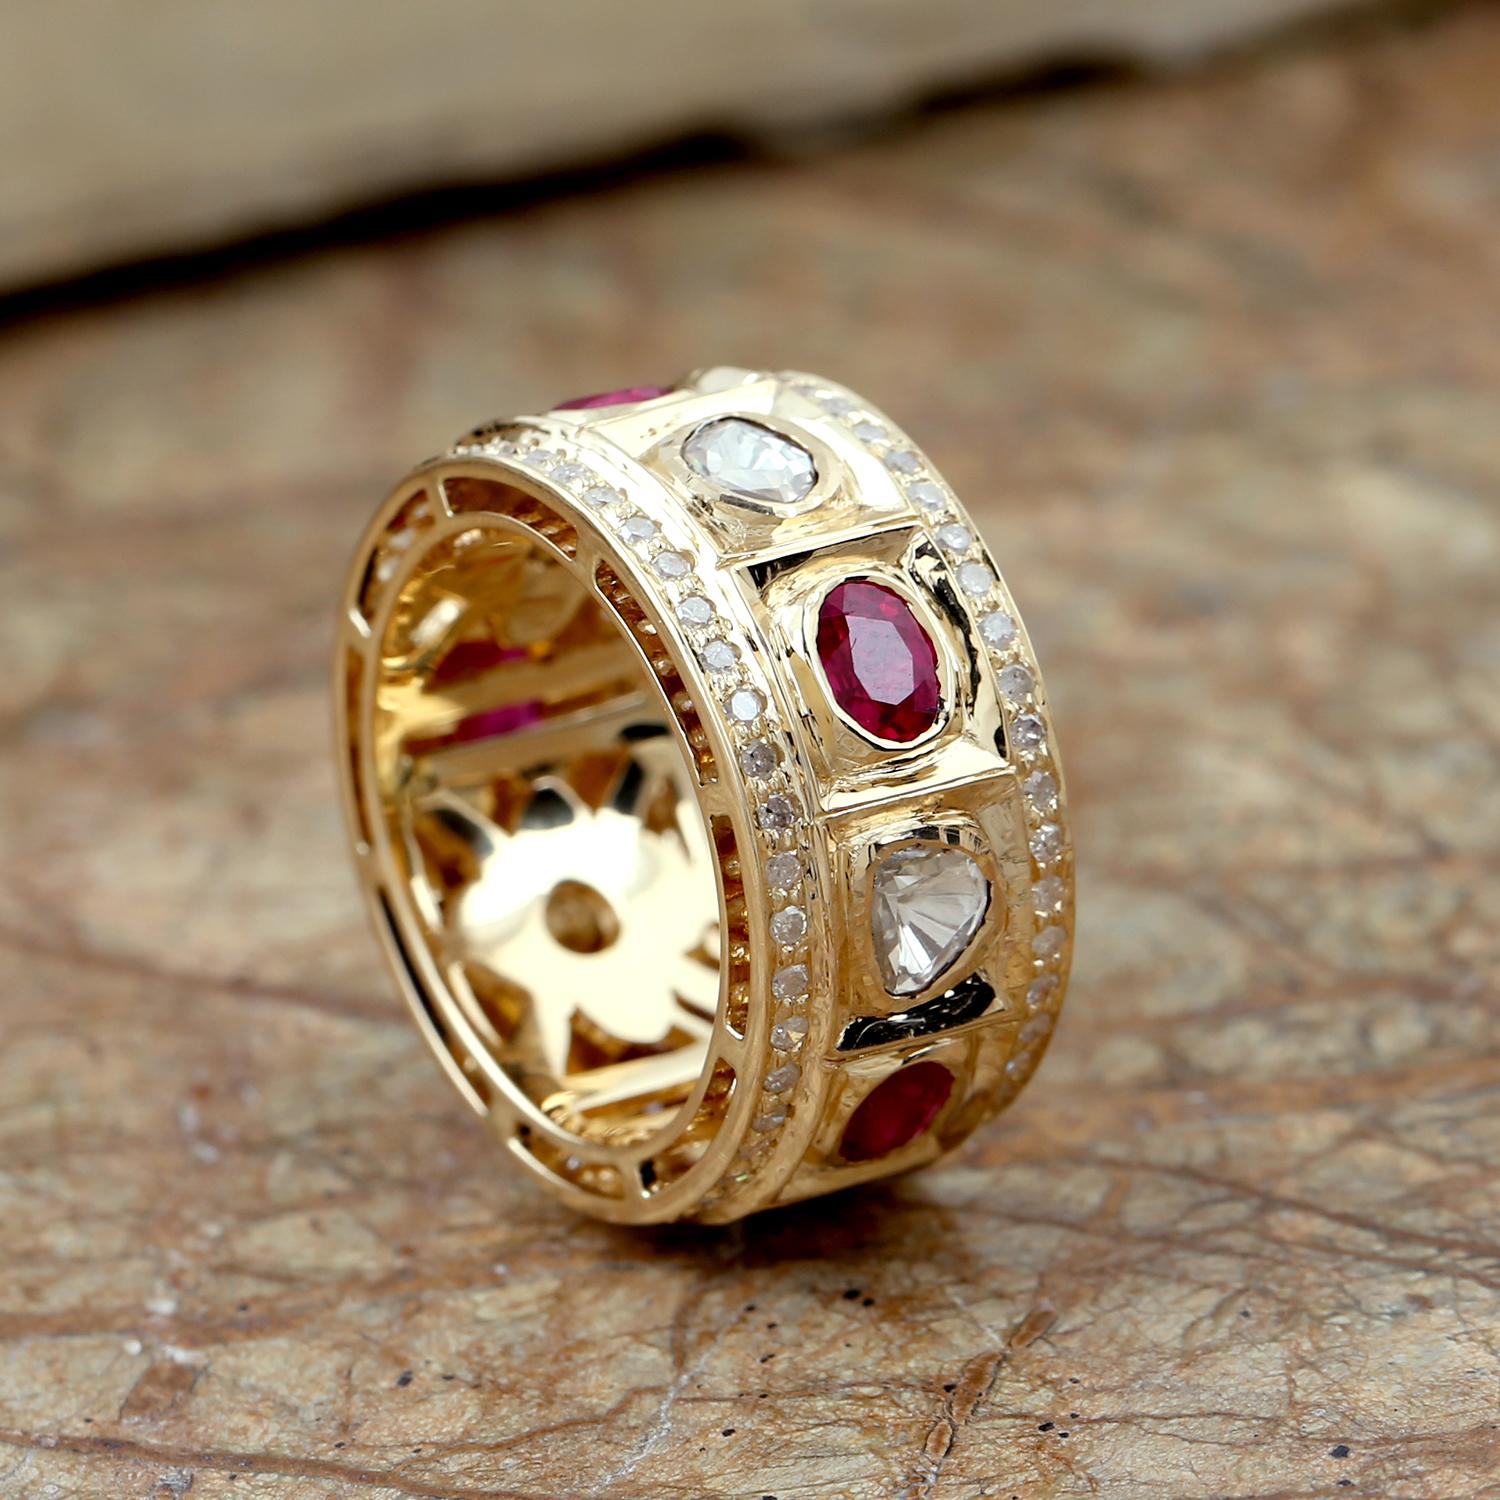 Dieses schöne Band Ring ist aus 18k Gelbgold und verfügt über eine Reihe von Rubinen und polki Diamanten mit einem Satz von Pave Diamant. Die Rubine haben eine tiefe, satte rote Farbe und sind mit funkelnden Polki-Diamanten durchsetzt, die dem